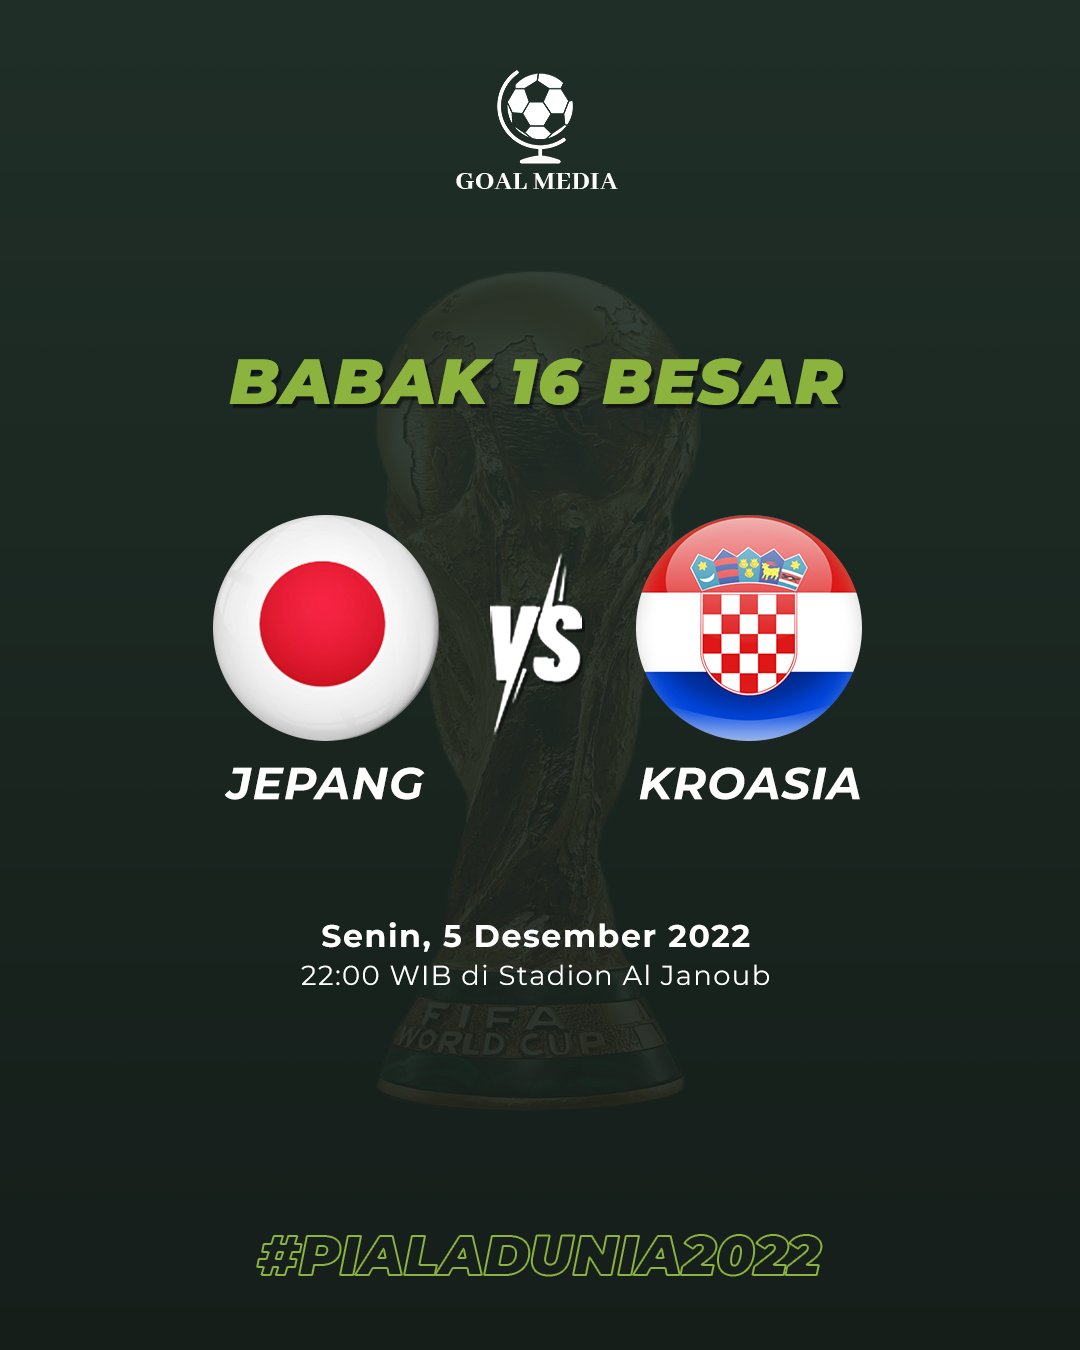 Jepang vs Kroasia : Starting Line up dan Prediksi Skor